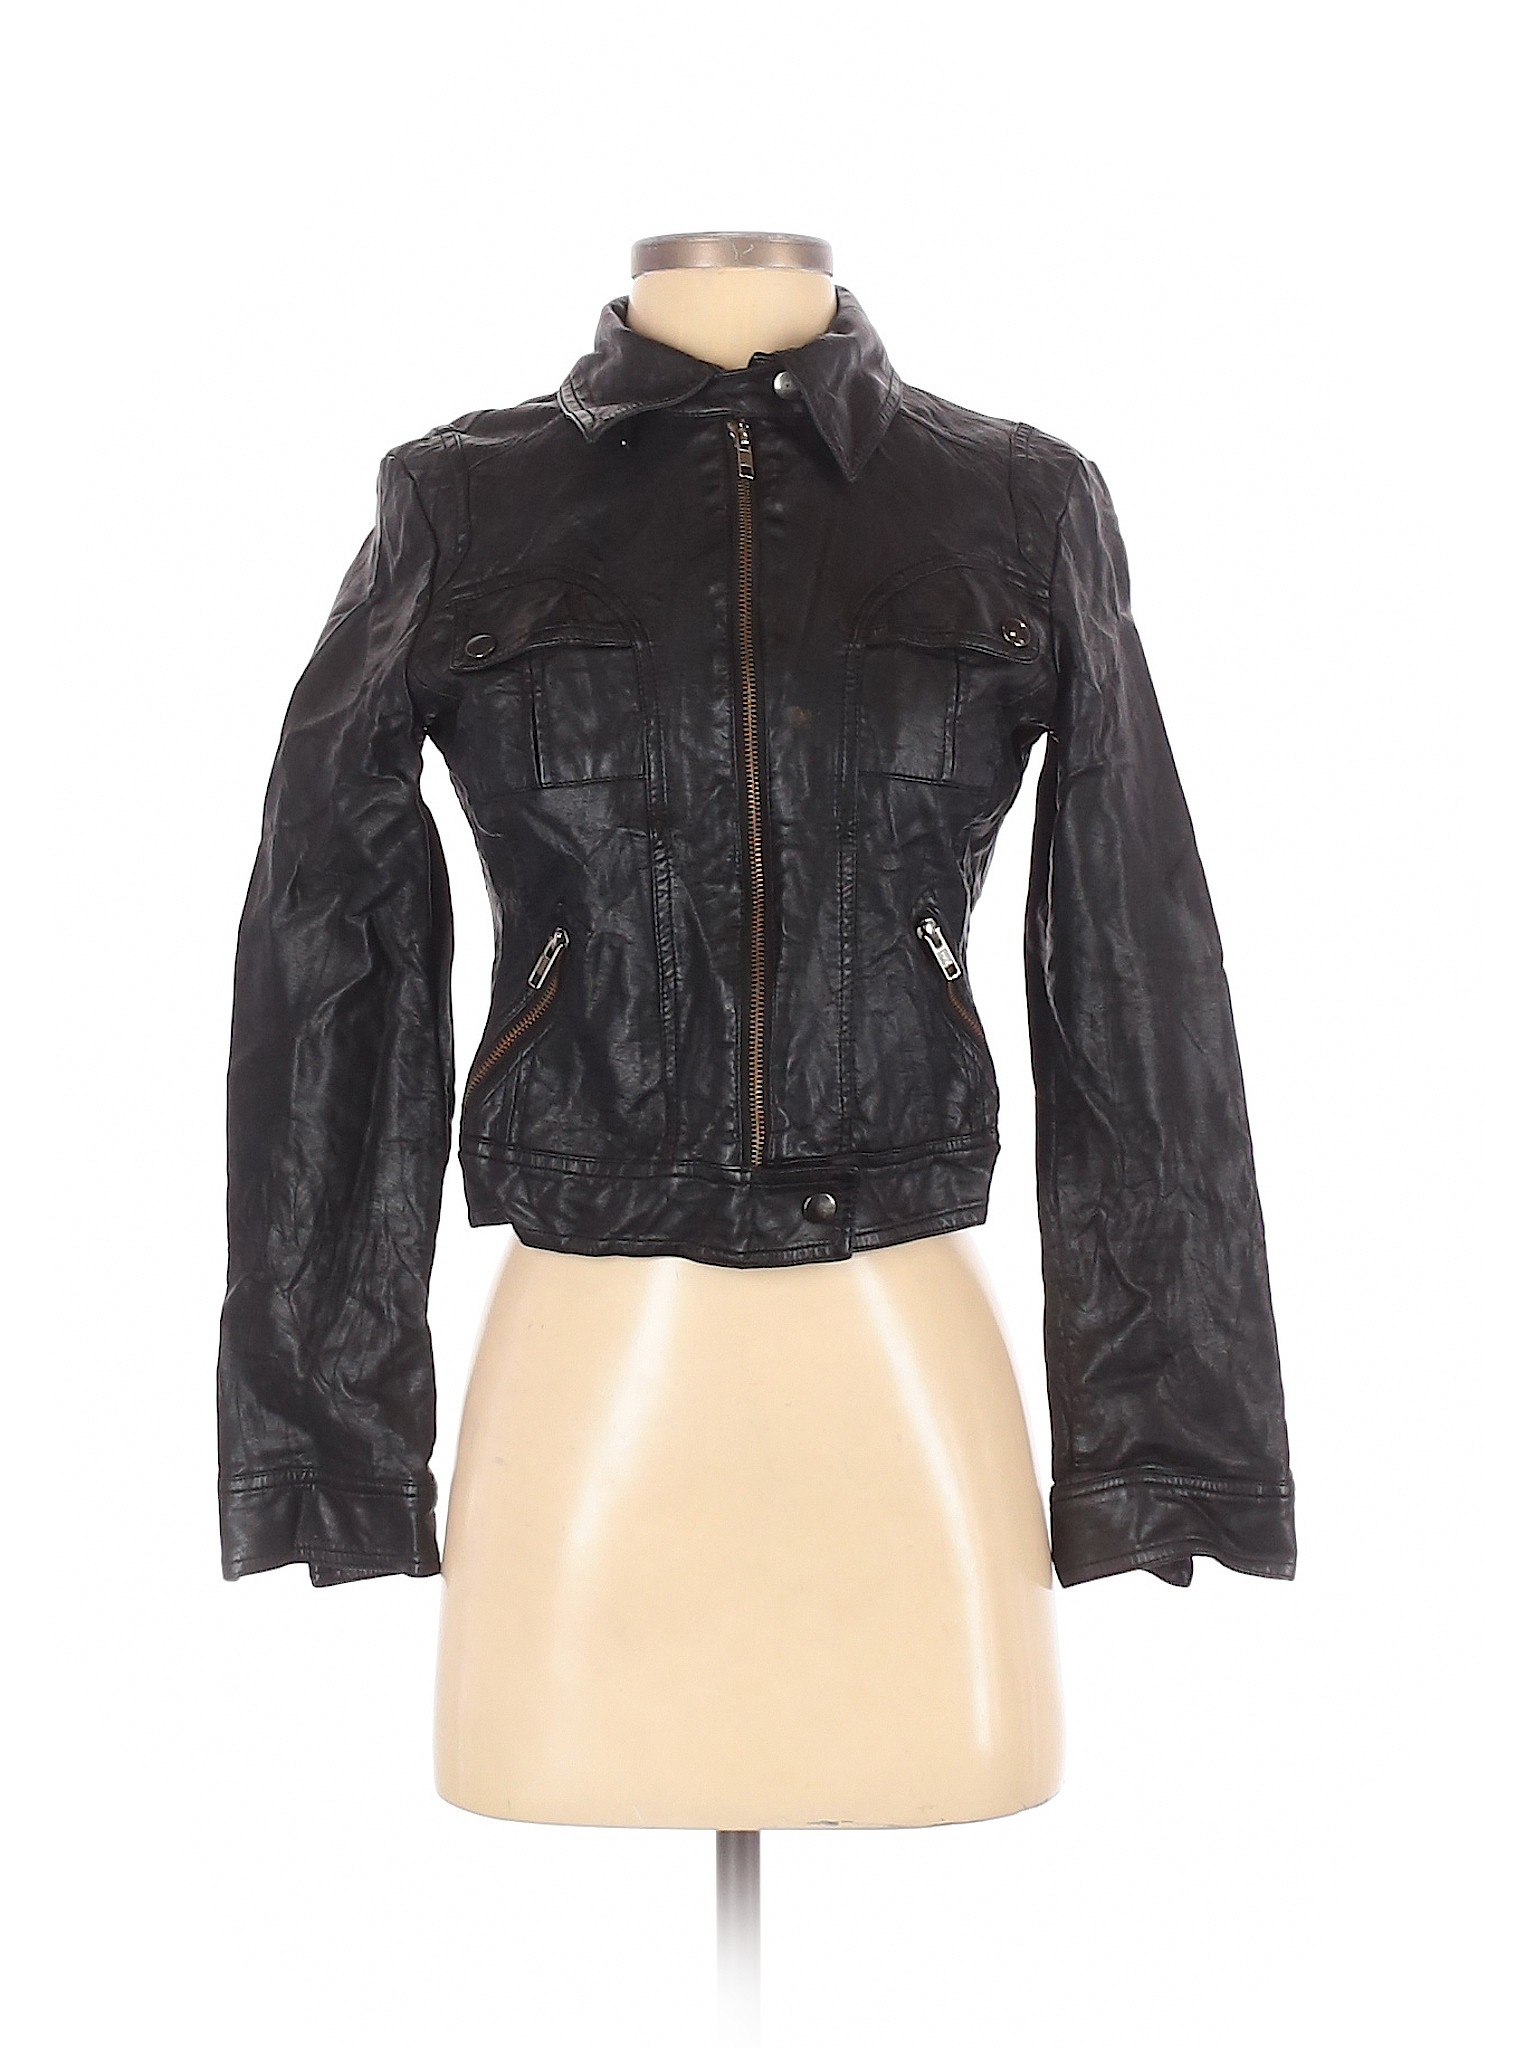 Elle Women Black Faux Leather Jacket S | eBay